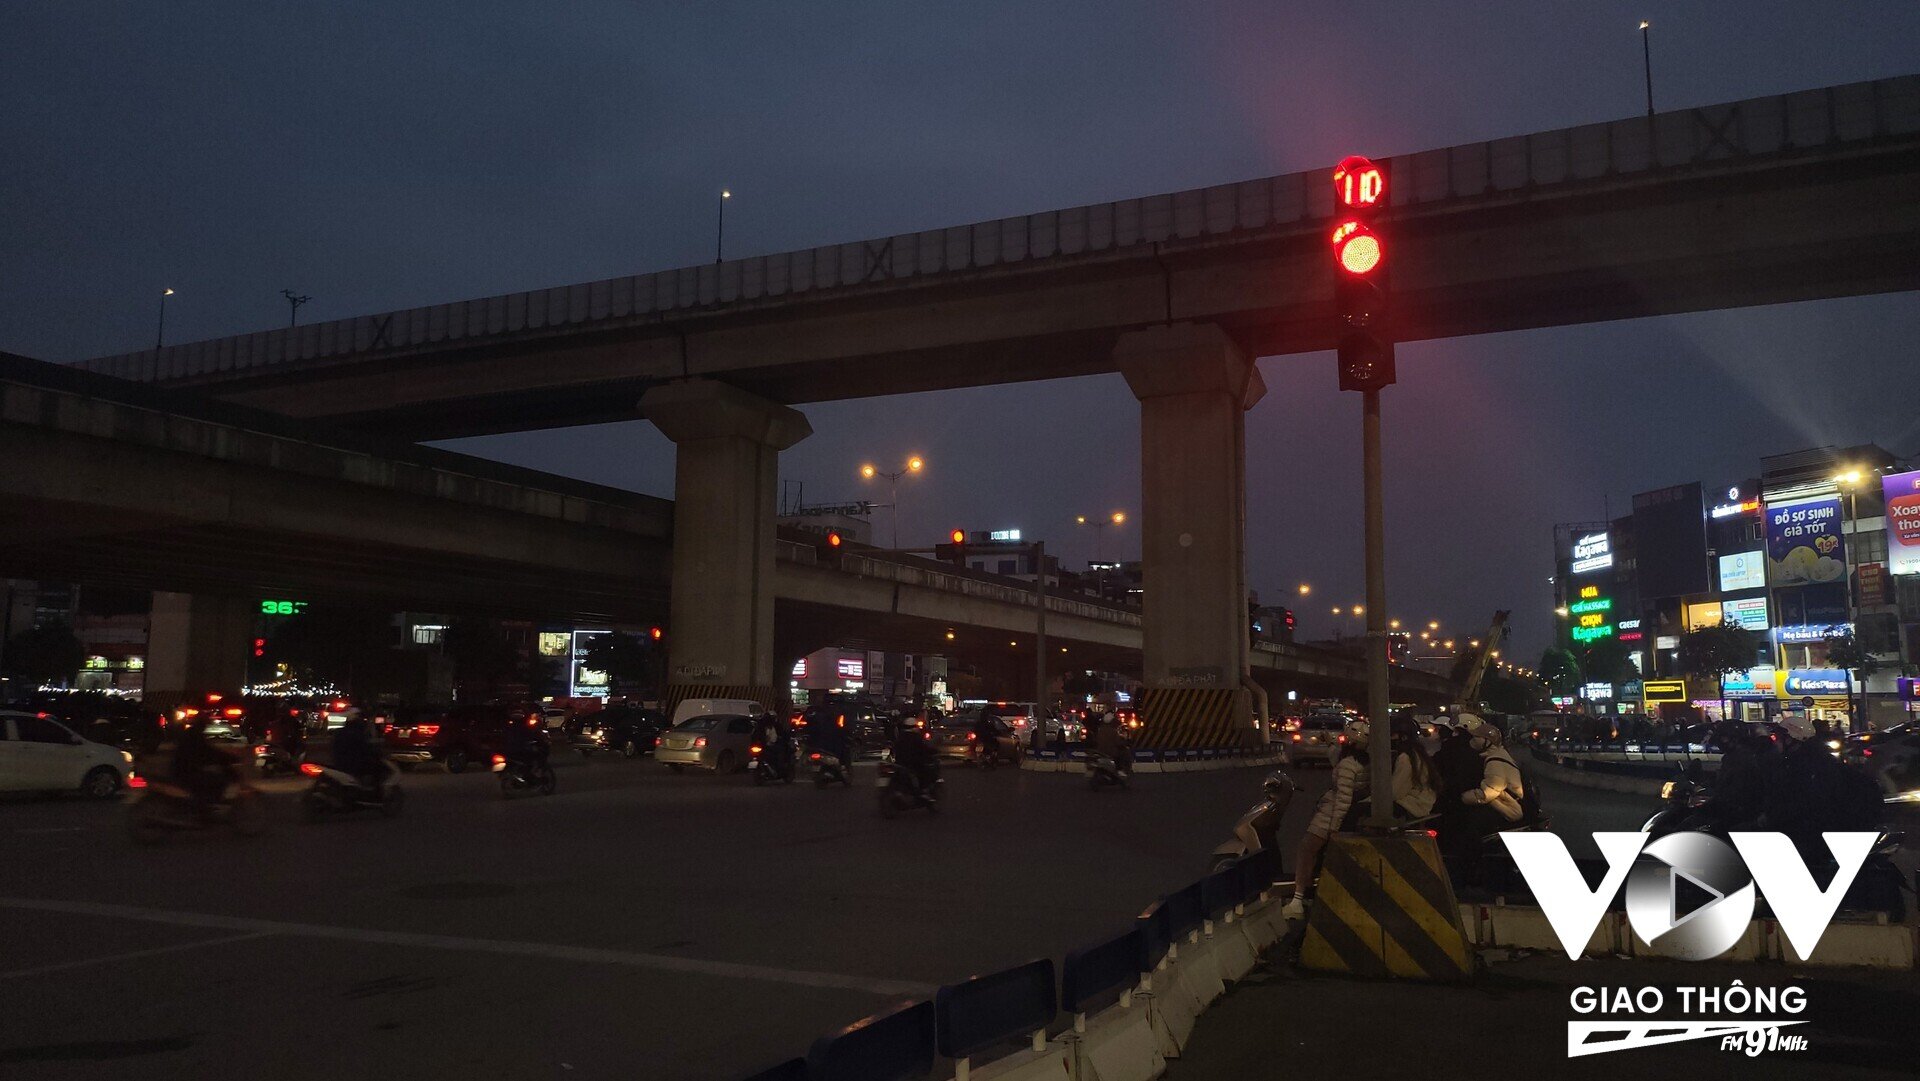 Số giây đèn tín hiệu thông tại ngã tư Nguyễn Trãi – Khuất Duy Tiến – Nguyễn Xiển (quận Thanh Xuân, Hà Nội) kết quả cho thấy hướng từ Khuất Duy Tiến - Nguyễn Xiển đèn đỏ là 110 giây, còn đèn xanh là 45 giây.